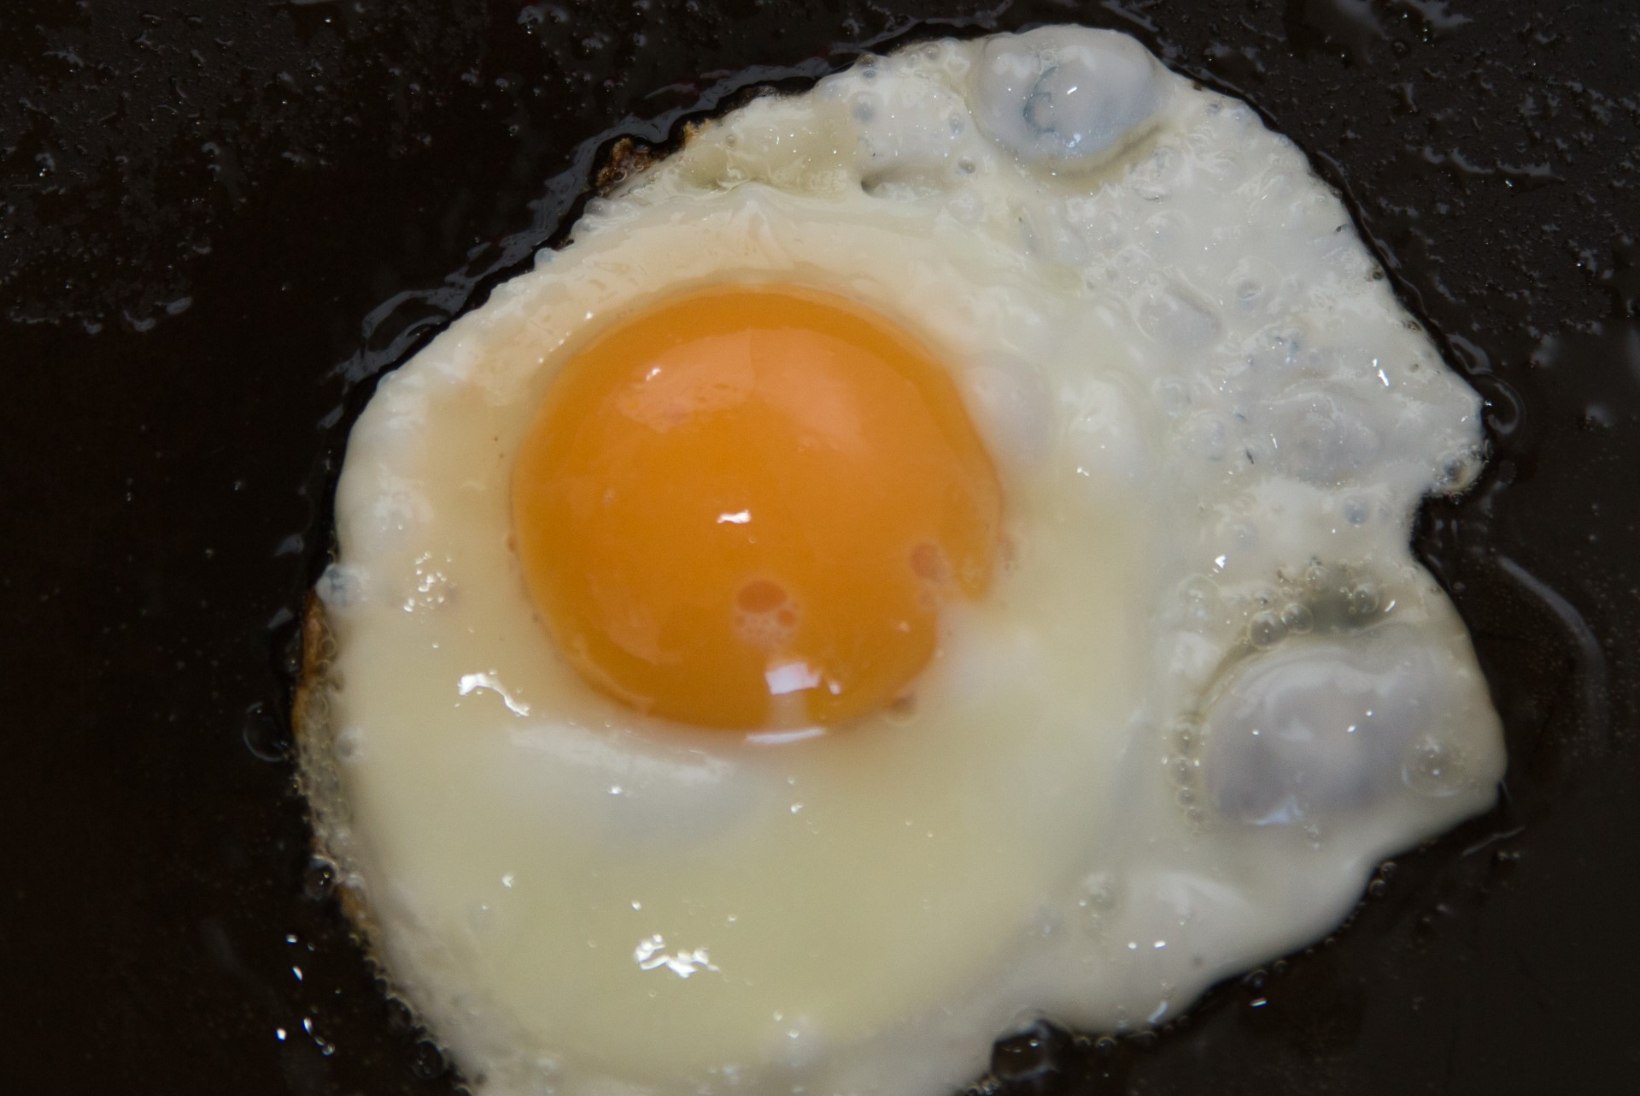 6 fakti: muna, igas eas vajalik